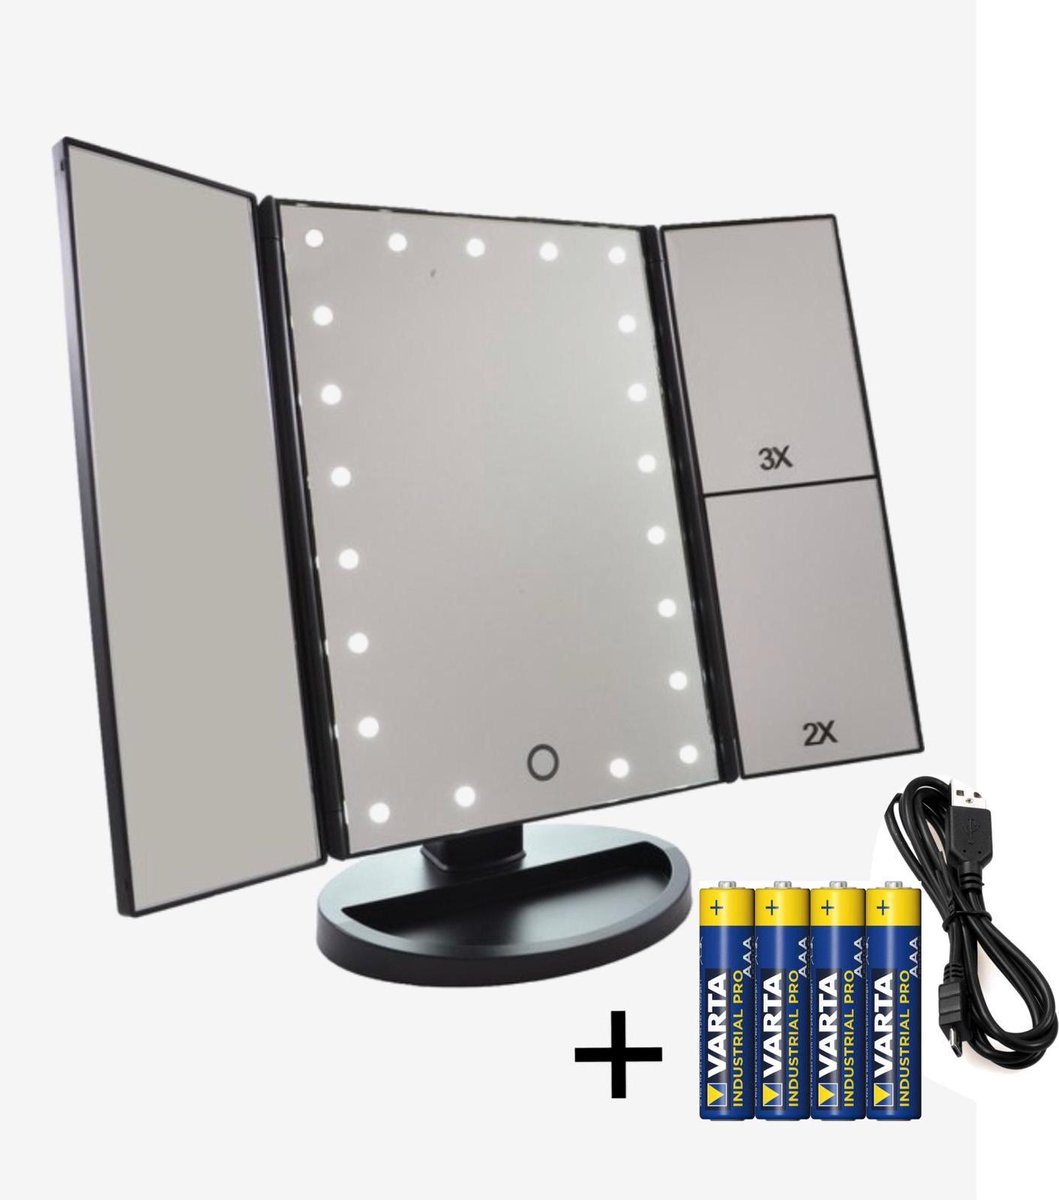 RoRo Living® zwarte stijlvolle make-up spiegel met LED verlichting, 2x en 3x vergroting, inclusief batterijen en usb kabel - RoRo LIving